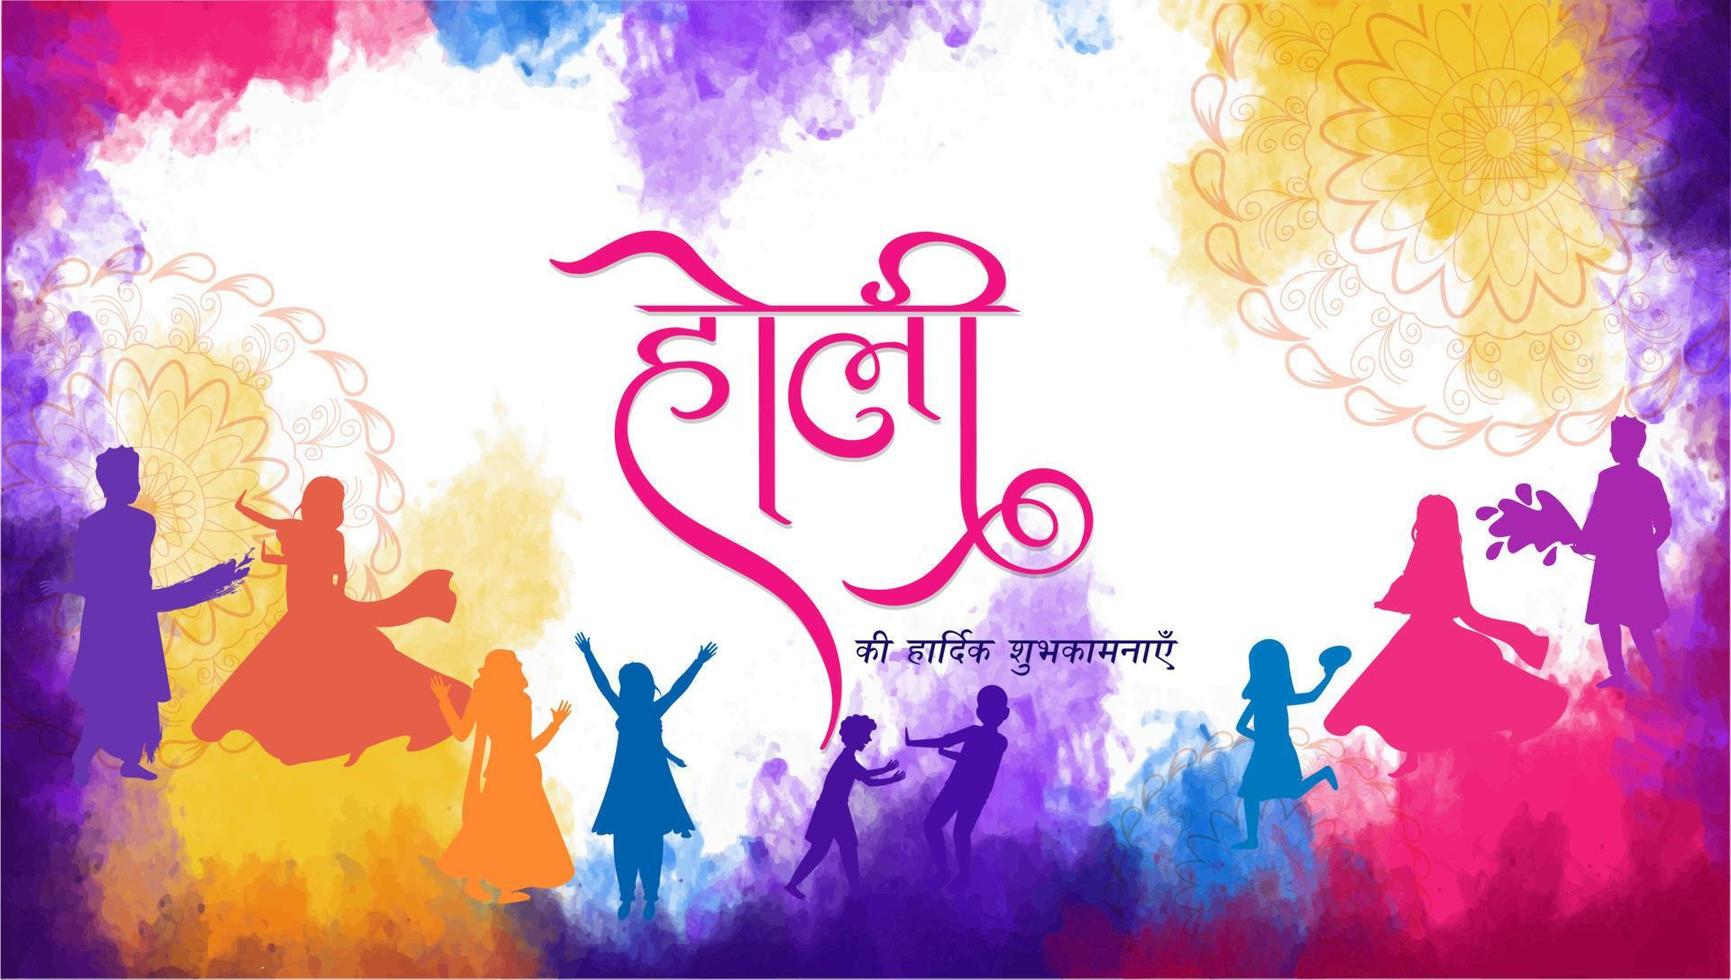 mejor deseos de holi en hindi idioma y silueta de personas celebrando o disfrutando colores en acuarela chapoteo antecedentes. vector